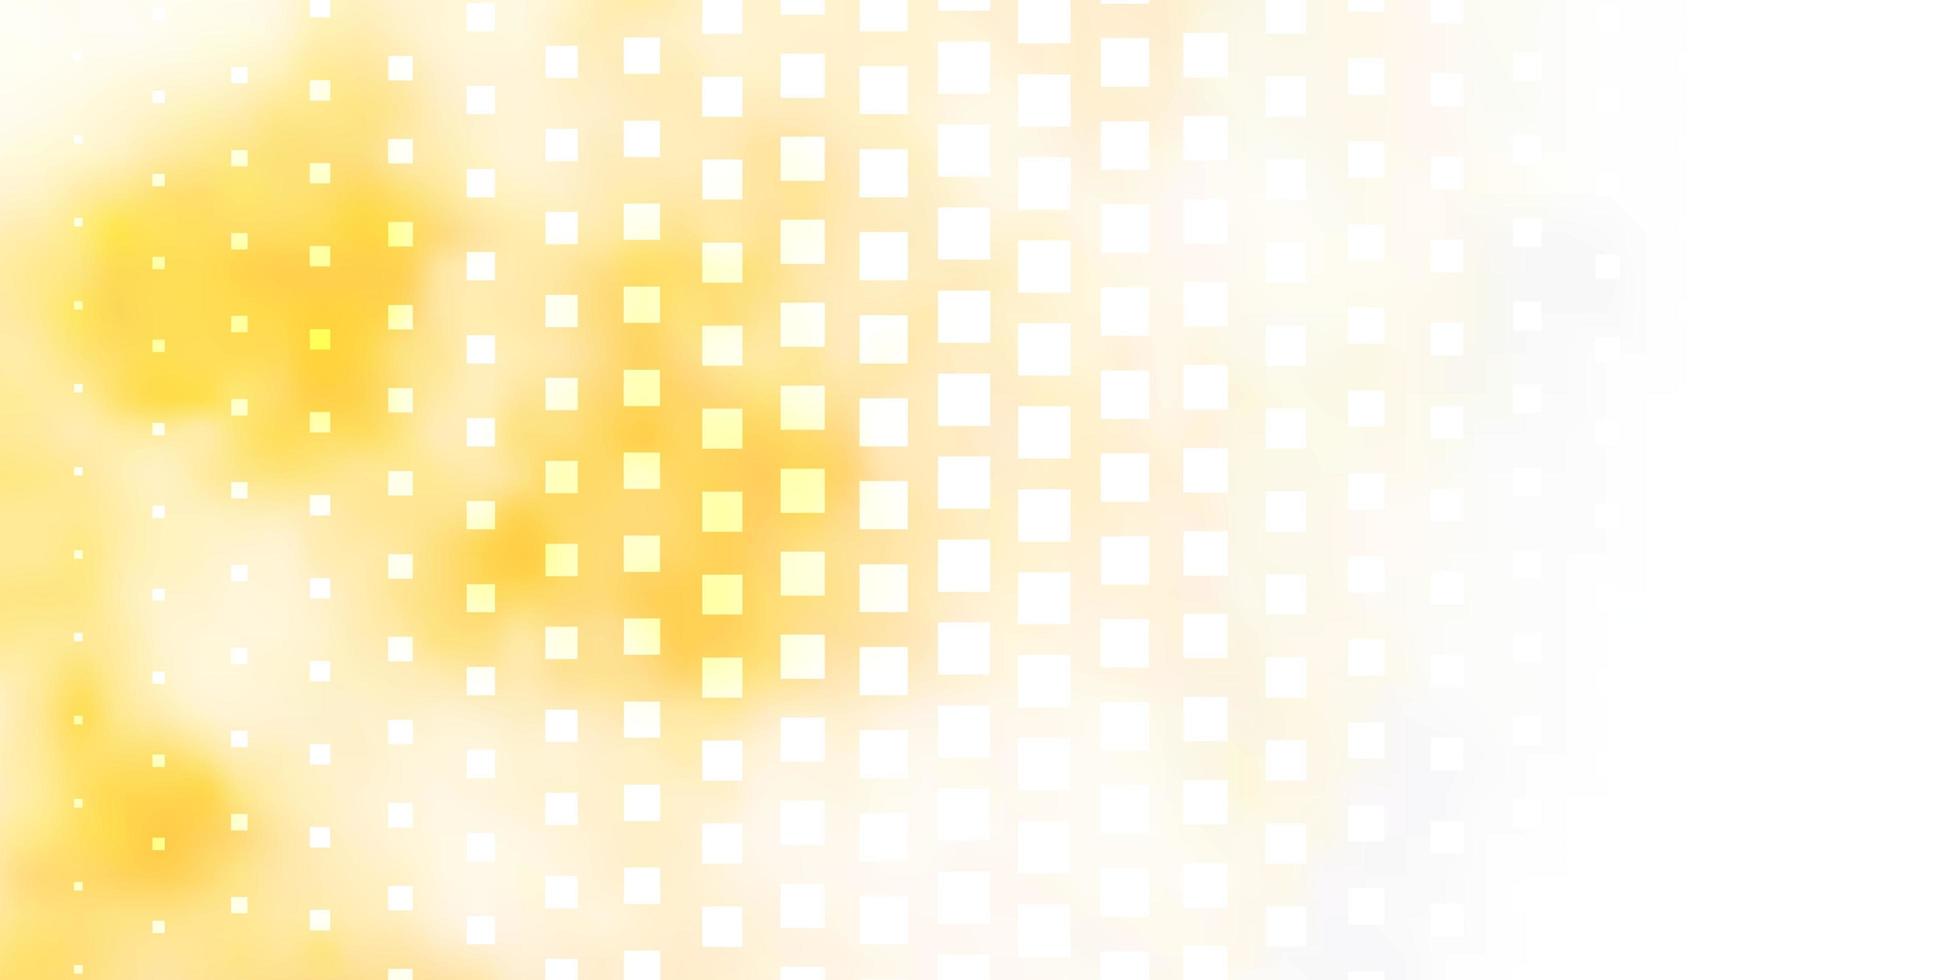 ljus orange vektor bakgrund med rektanglar. illustration med en uppsättning lutningsrektanglar. mönster för affärshäften, broschyrer